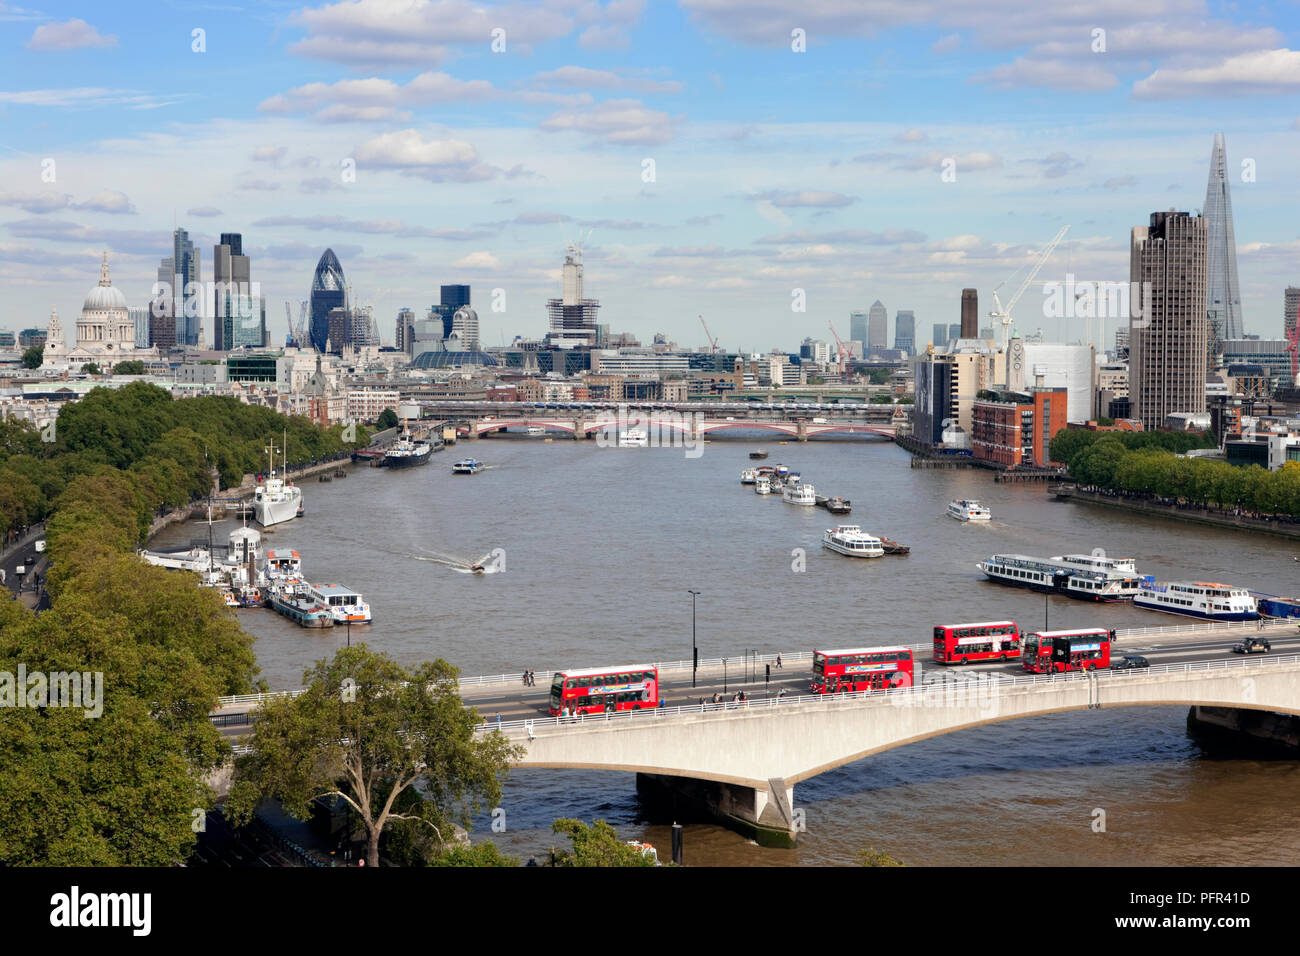 Grossbritannien, England, London, erhöhten Blick auf die Skyline der Stadt und die Themse, mit Waterloo Bridge im Vordergrund. Stockfoto